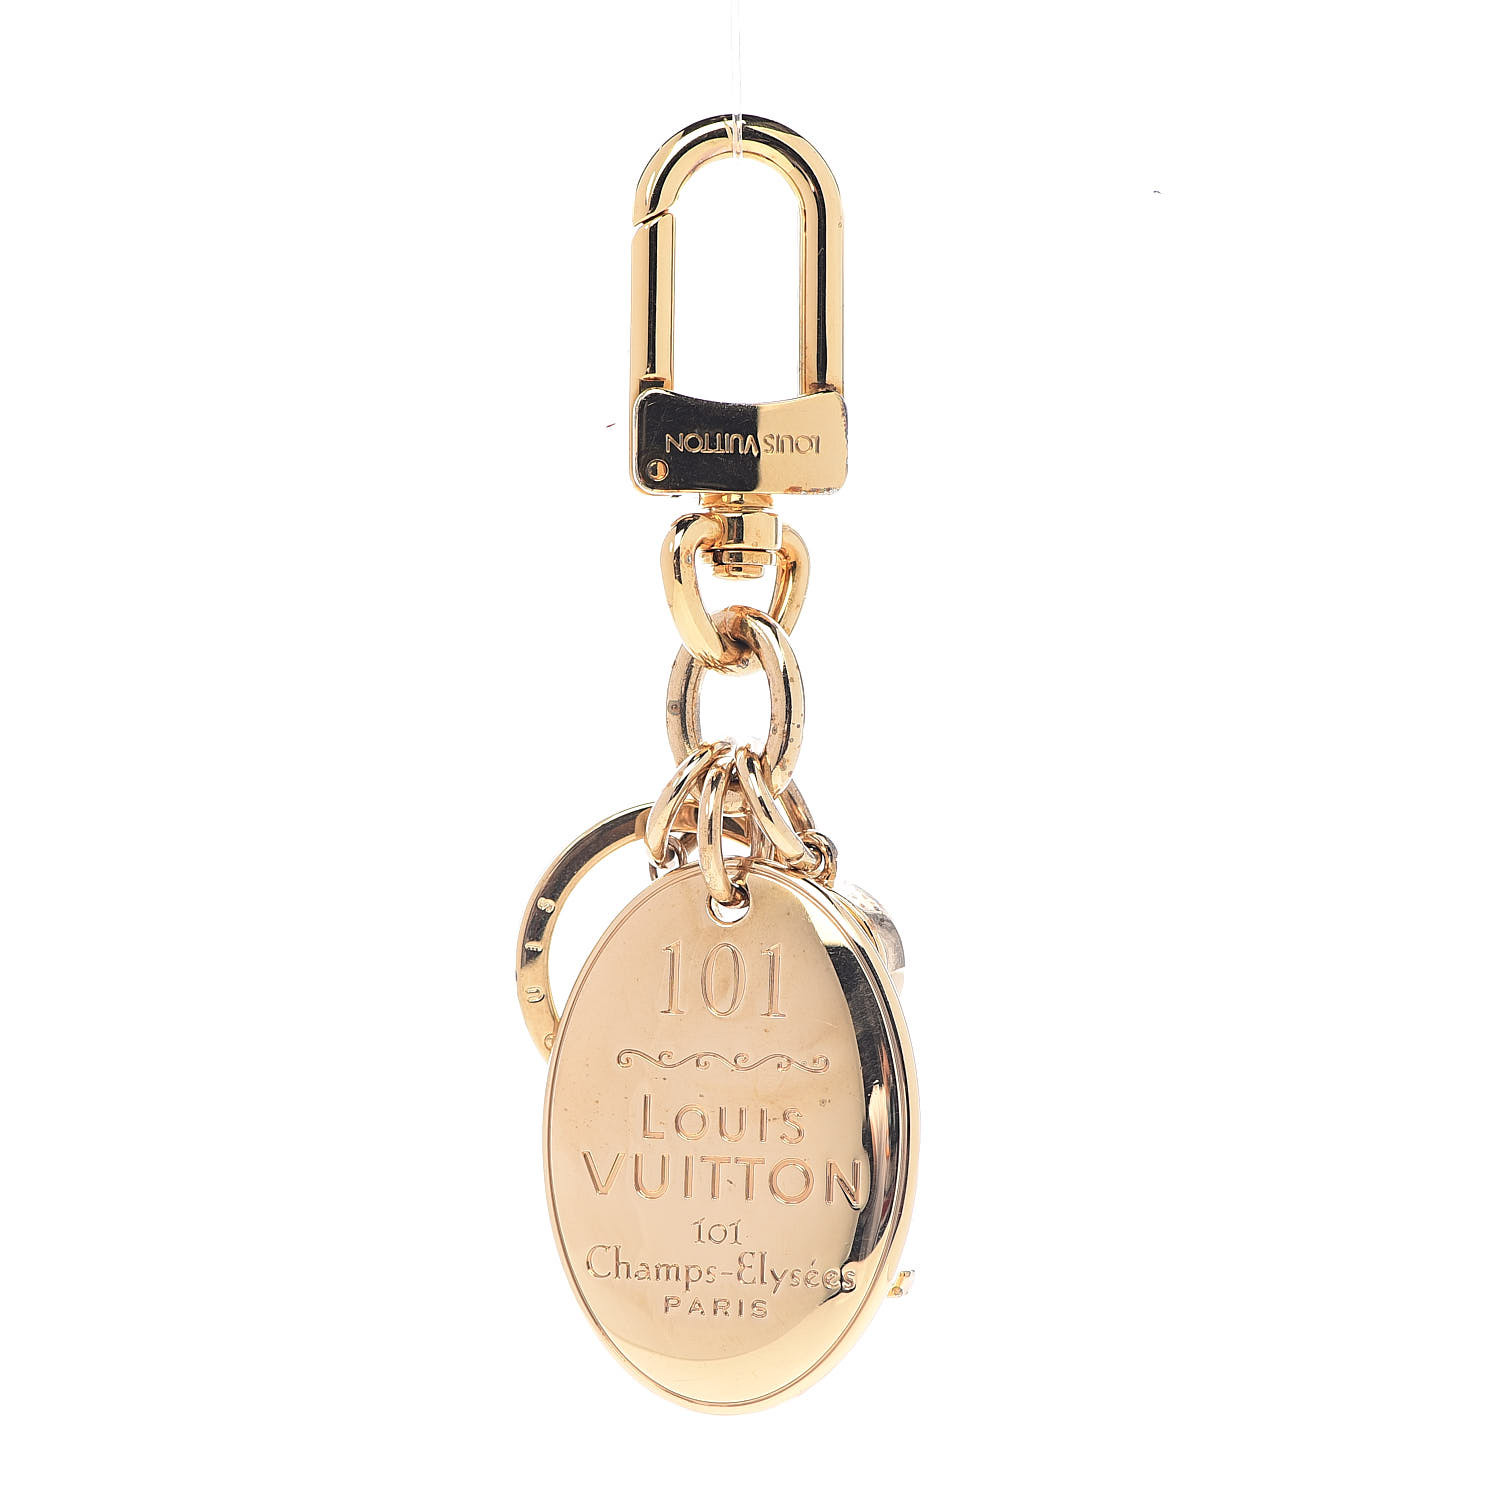 LOUIS VUITTON 101 Champs Elysees Maison Key Charm Gold 502793